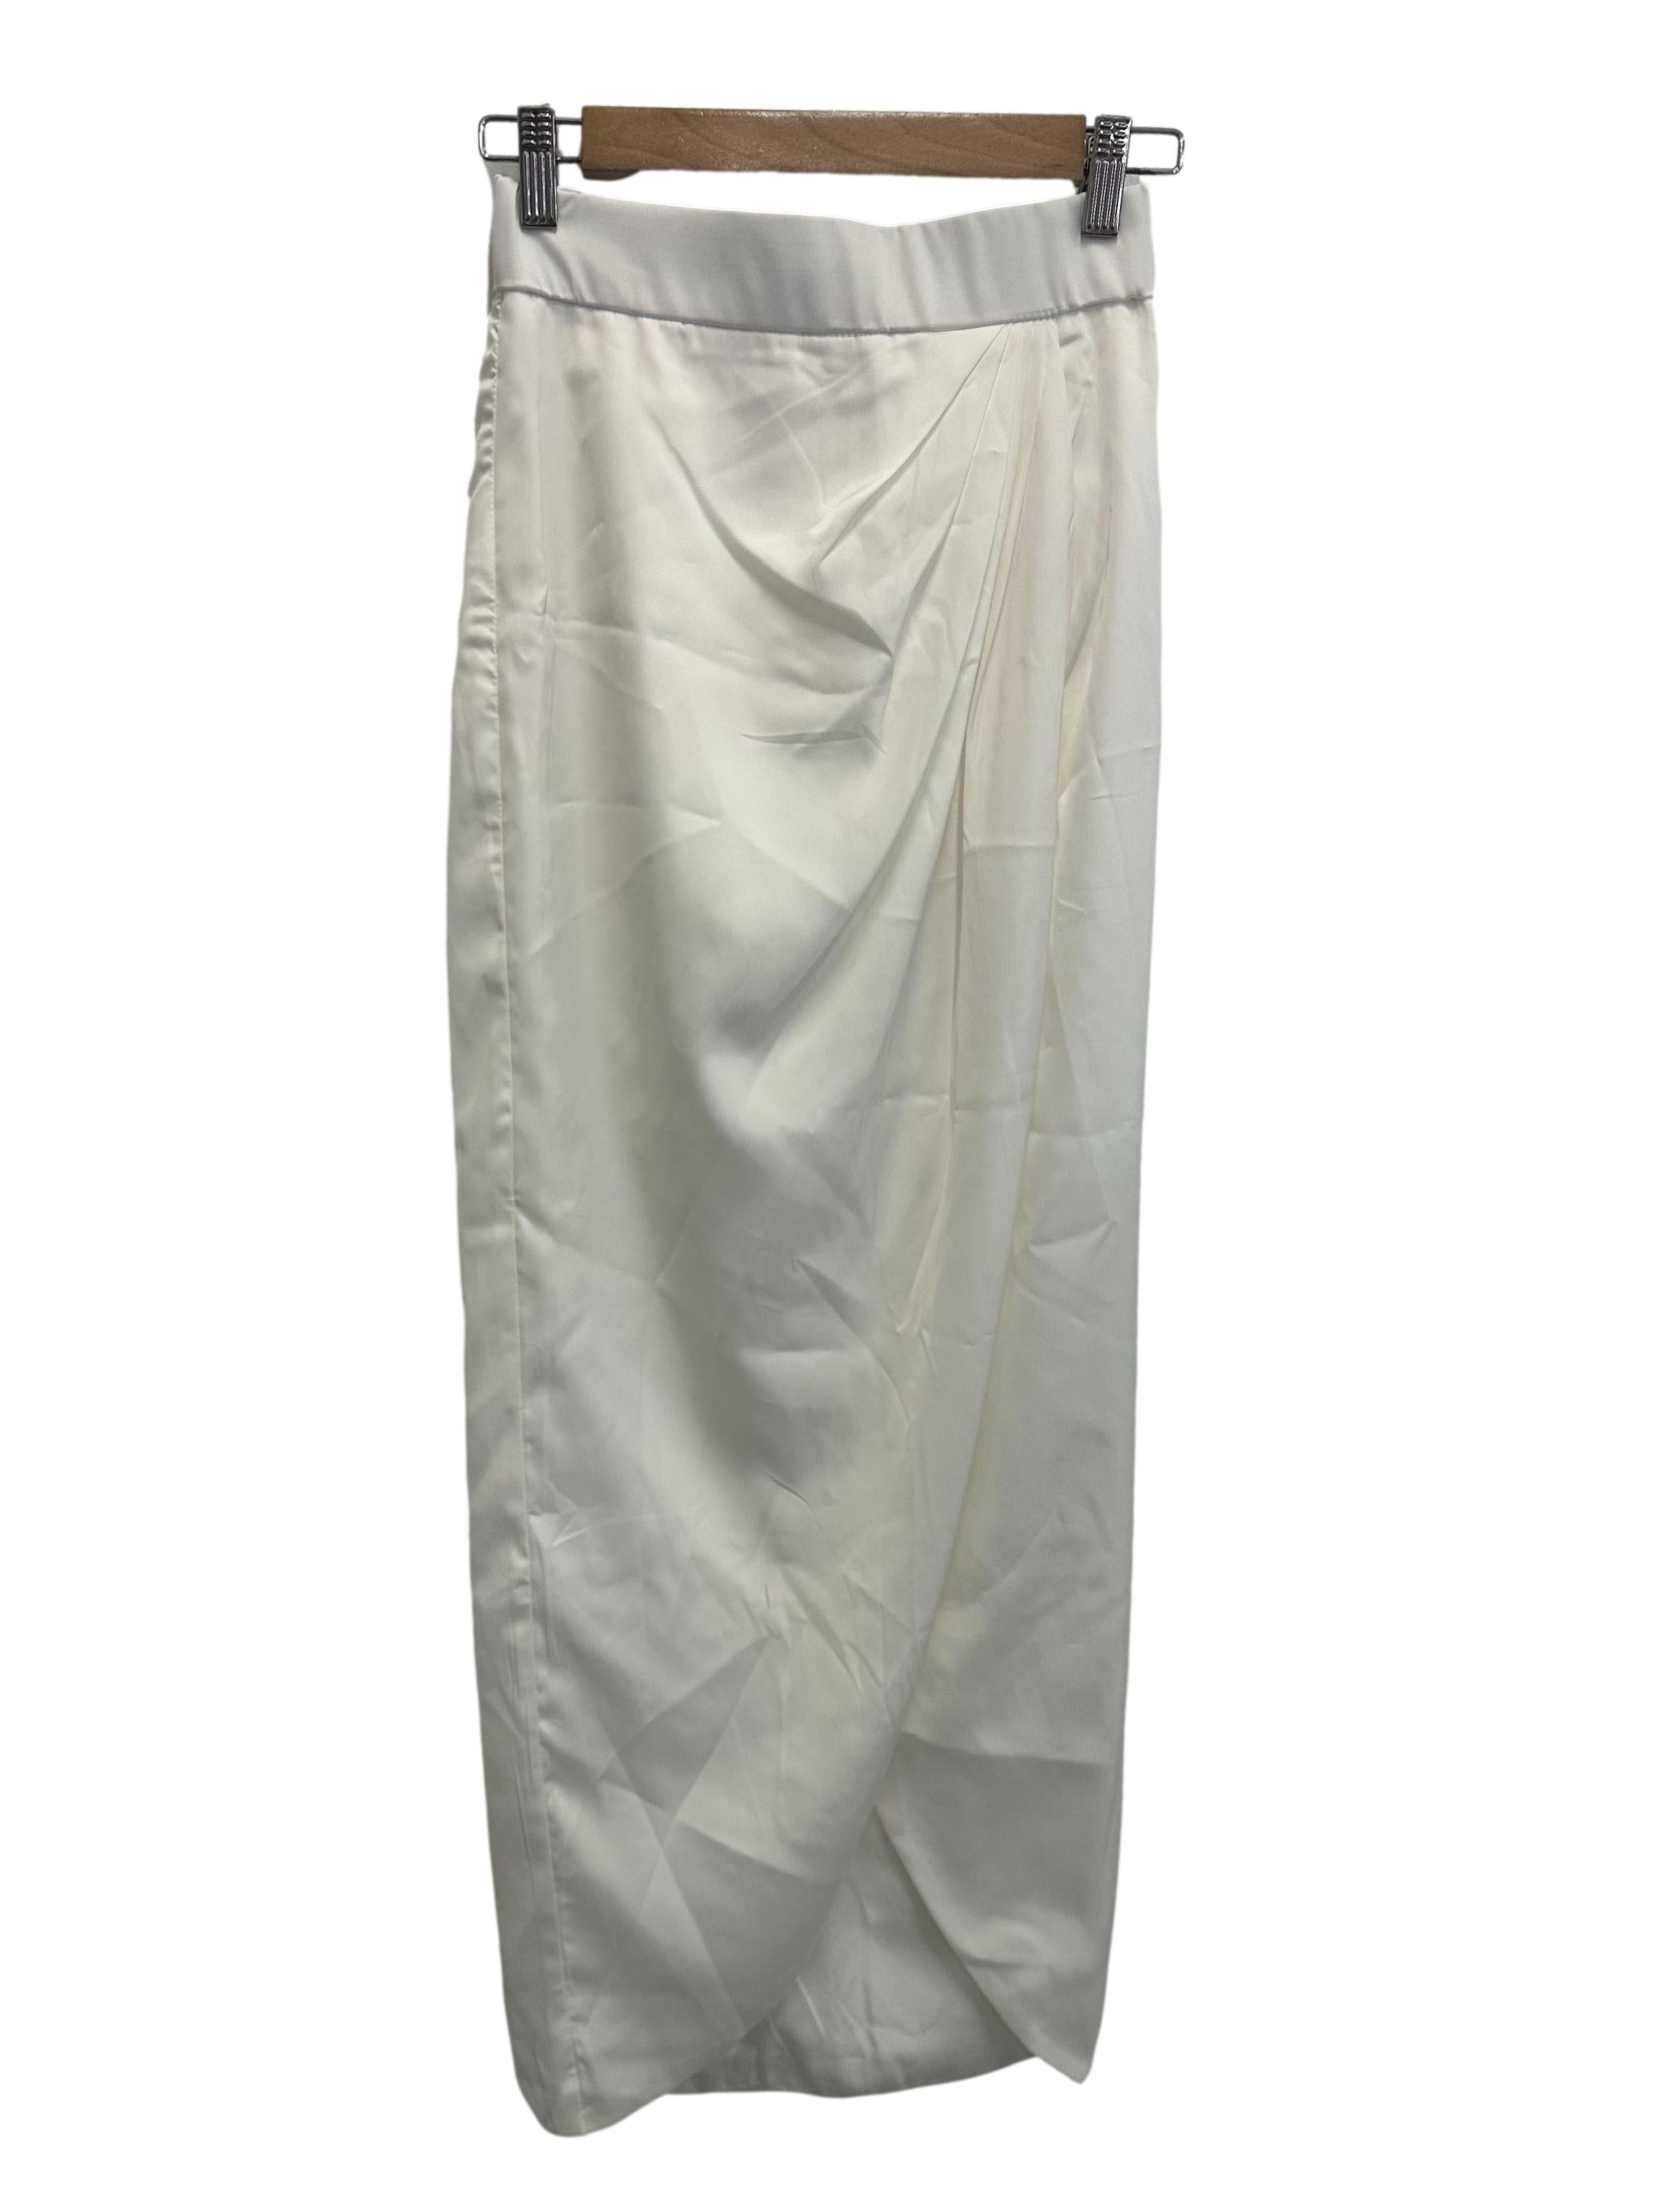 White Satin Ruch Skirt